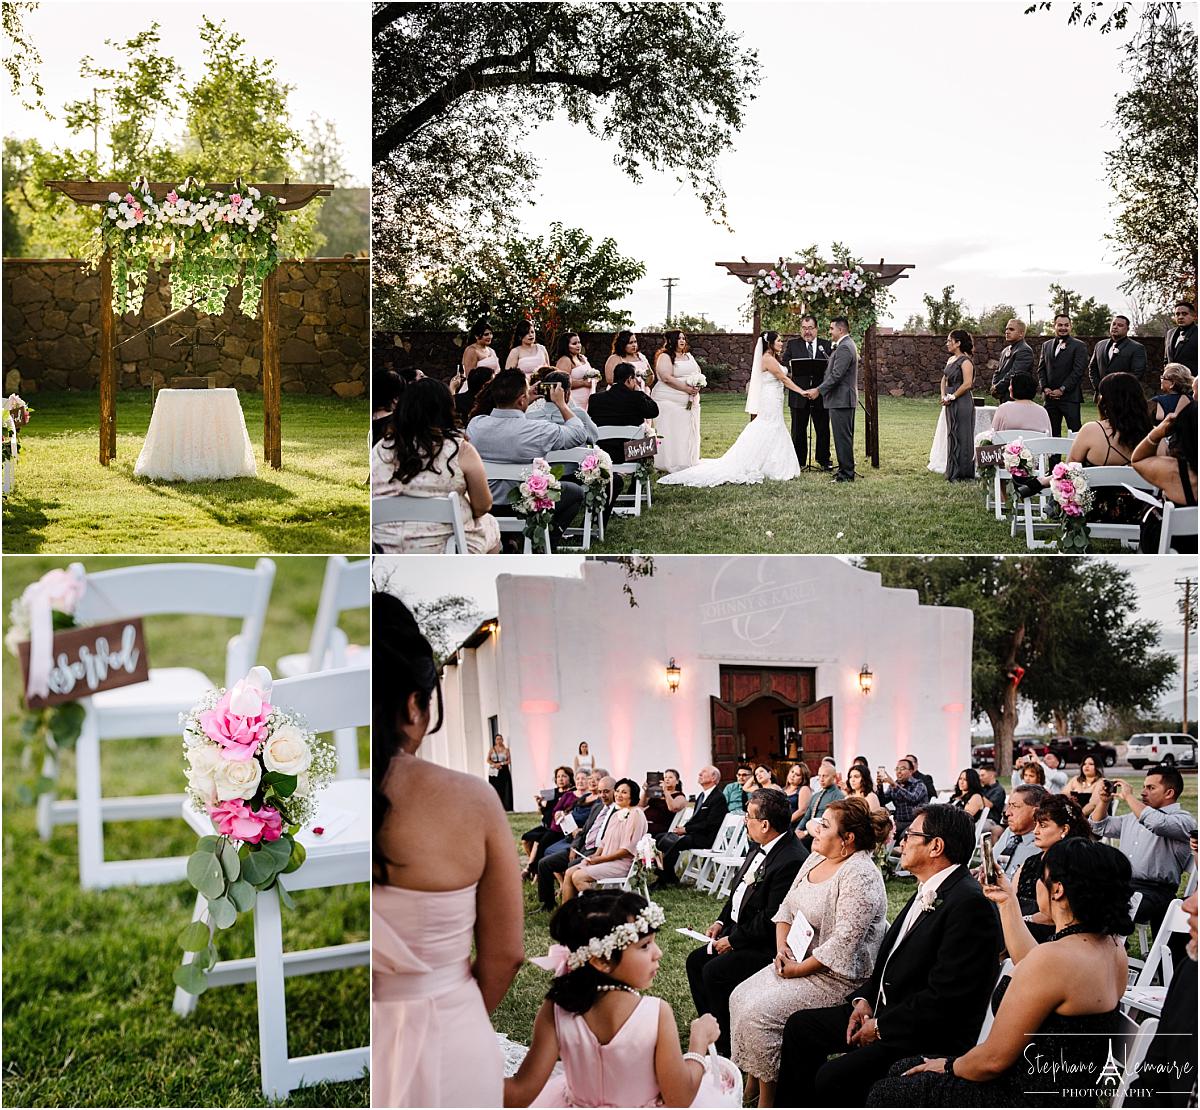 Wedding ceremony at Los Portales wedding venue in el paso texas by stephane lemaire photography